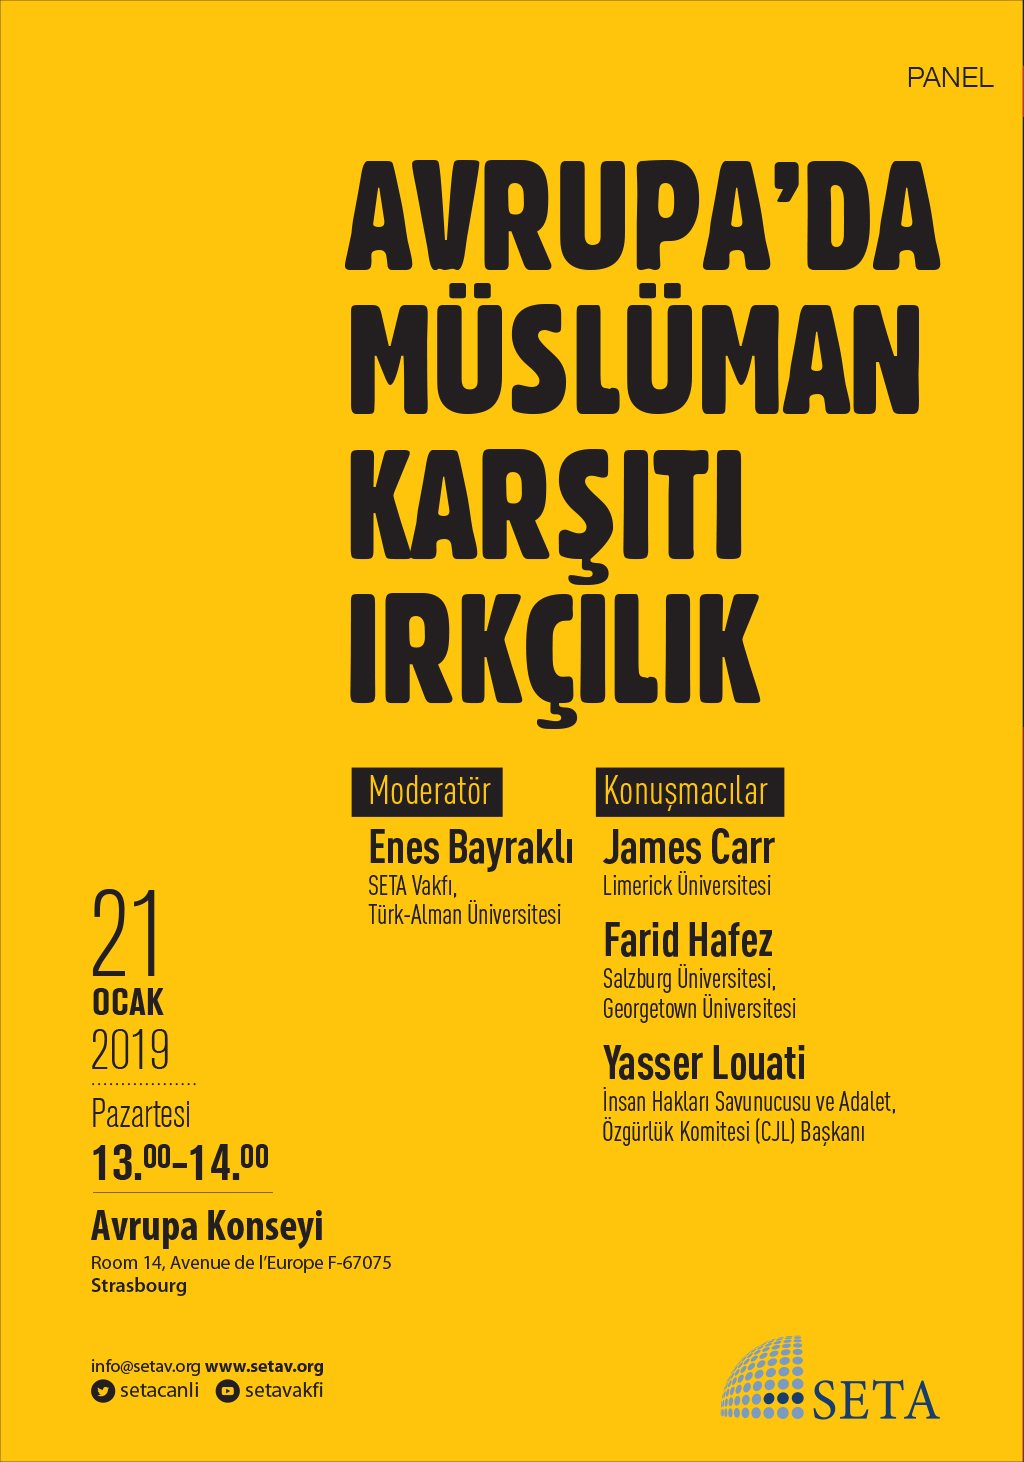 Panel Avrupa da Müslüman Karşıtı Irkçılık